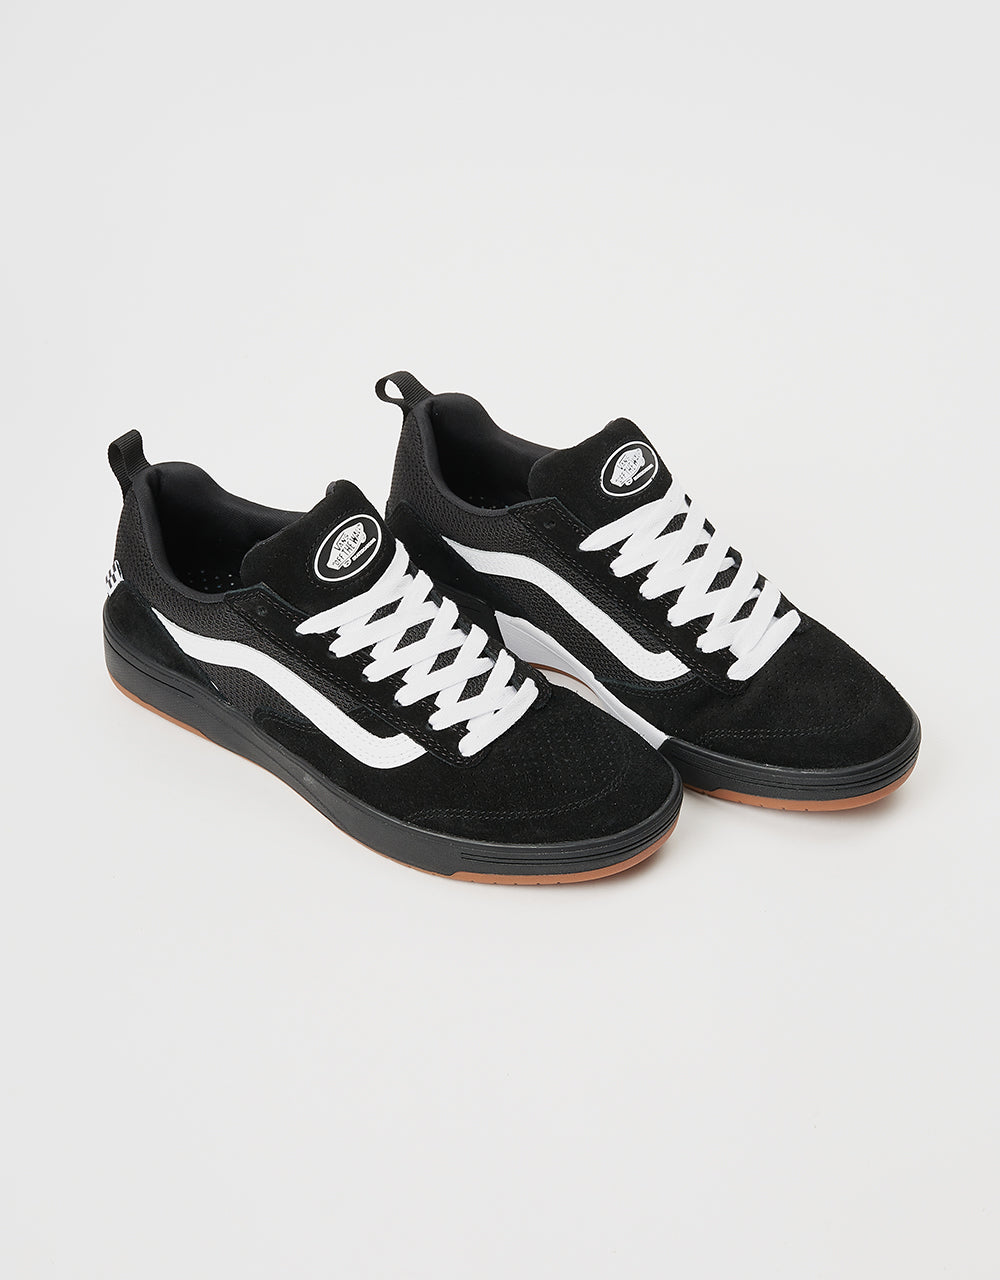 Vans Zahba Skate Shoes - Black/White